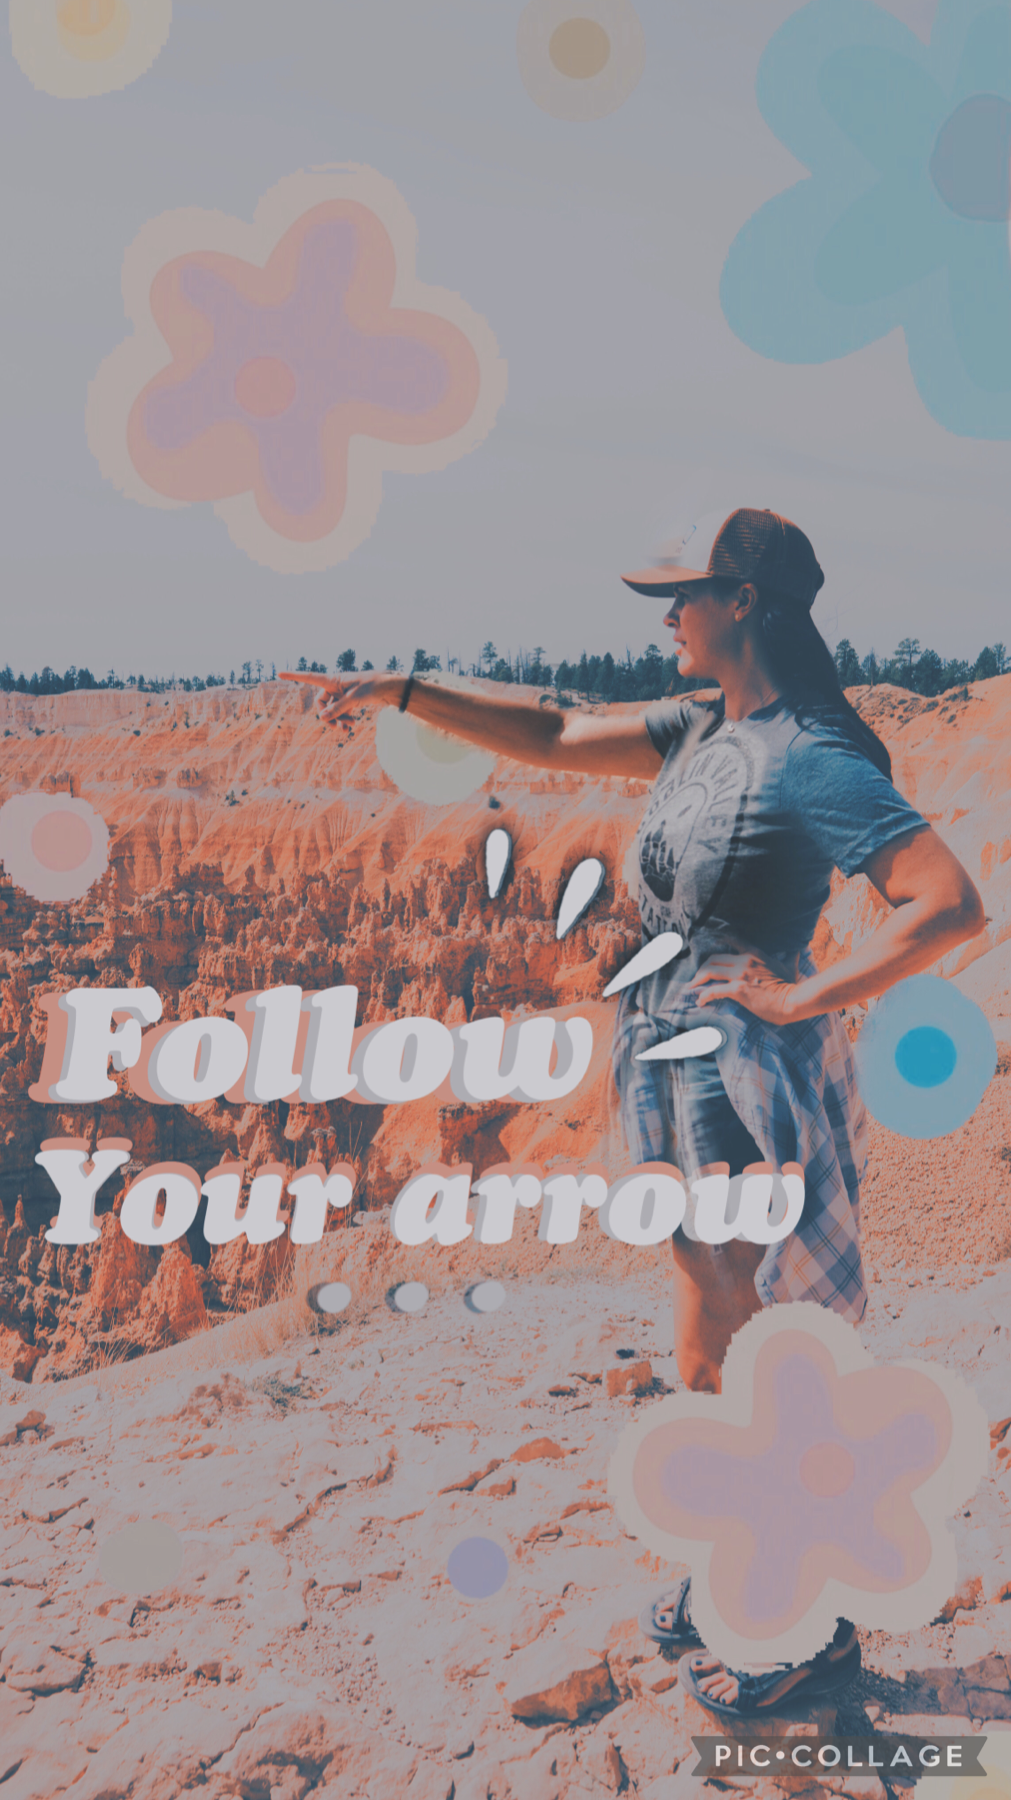 Follow your arrow 💕